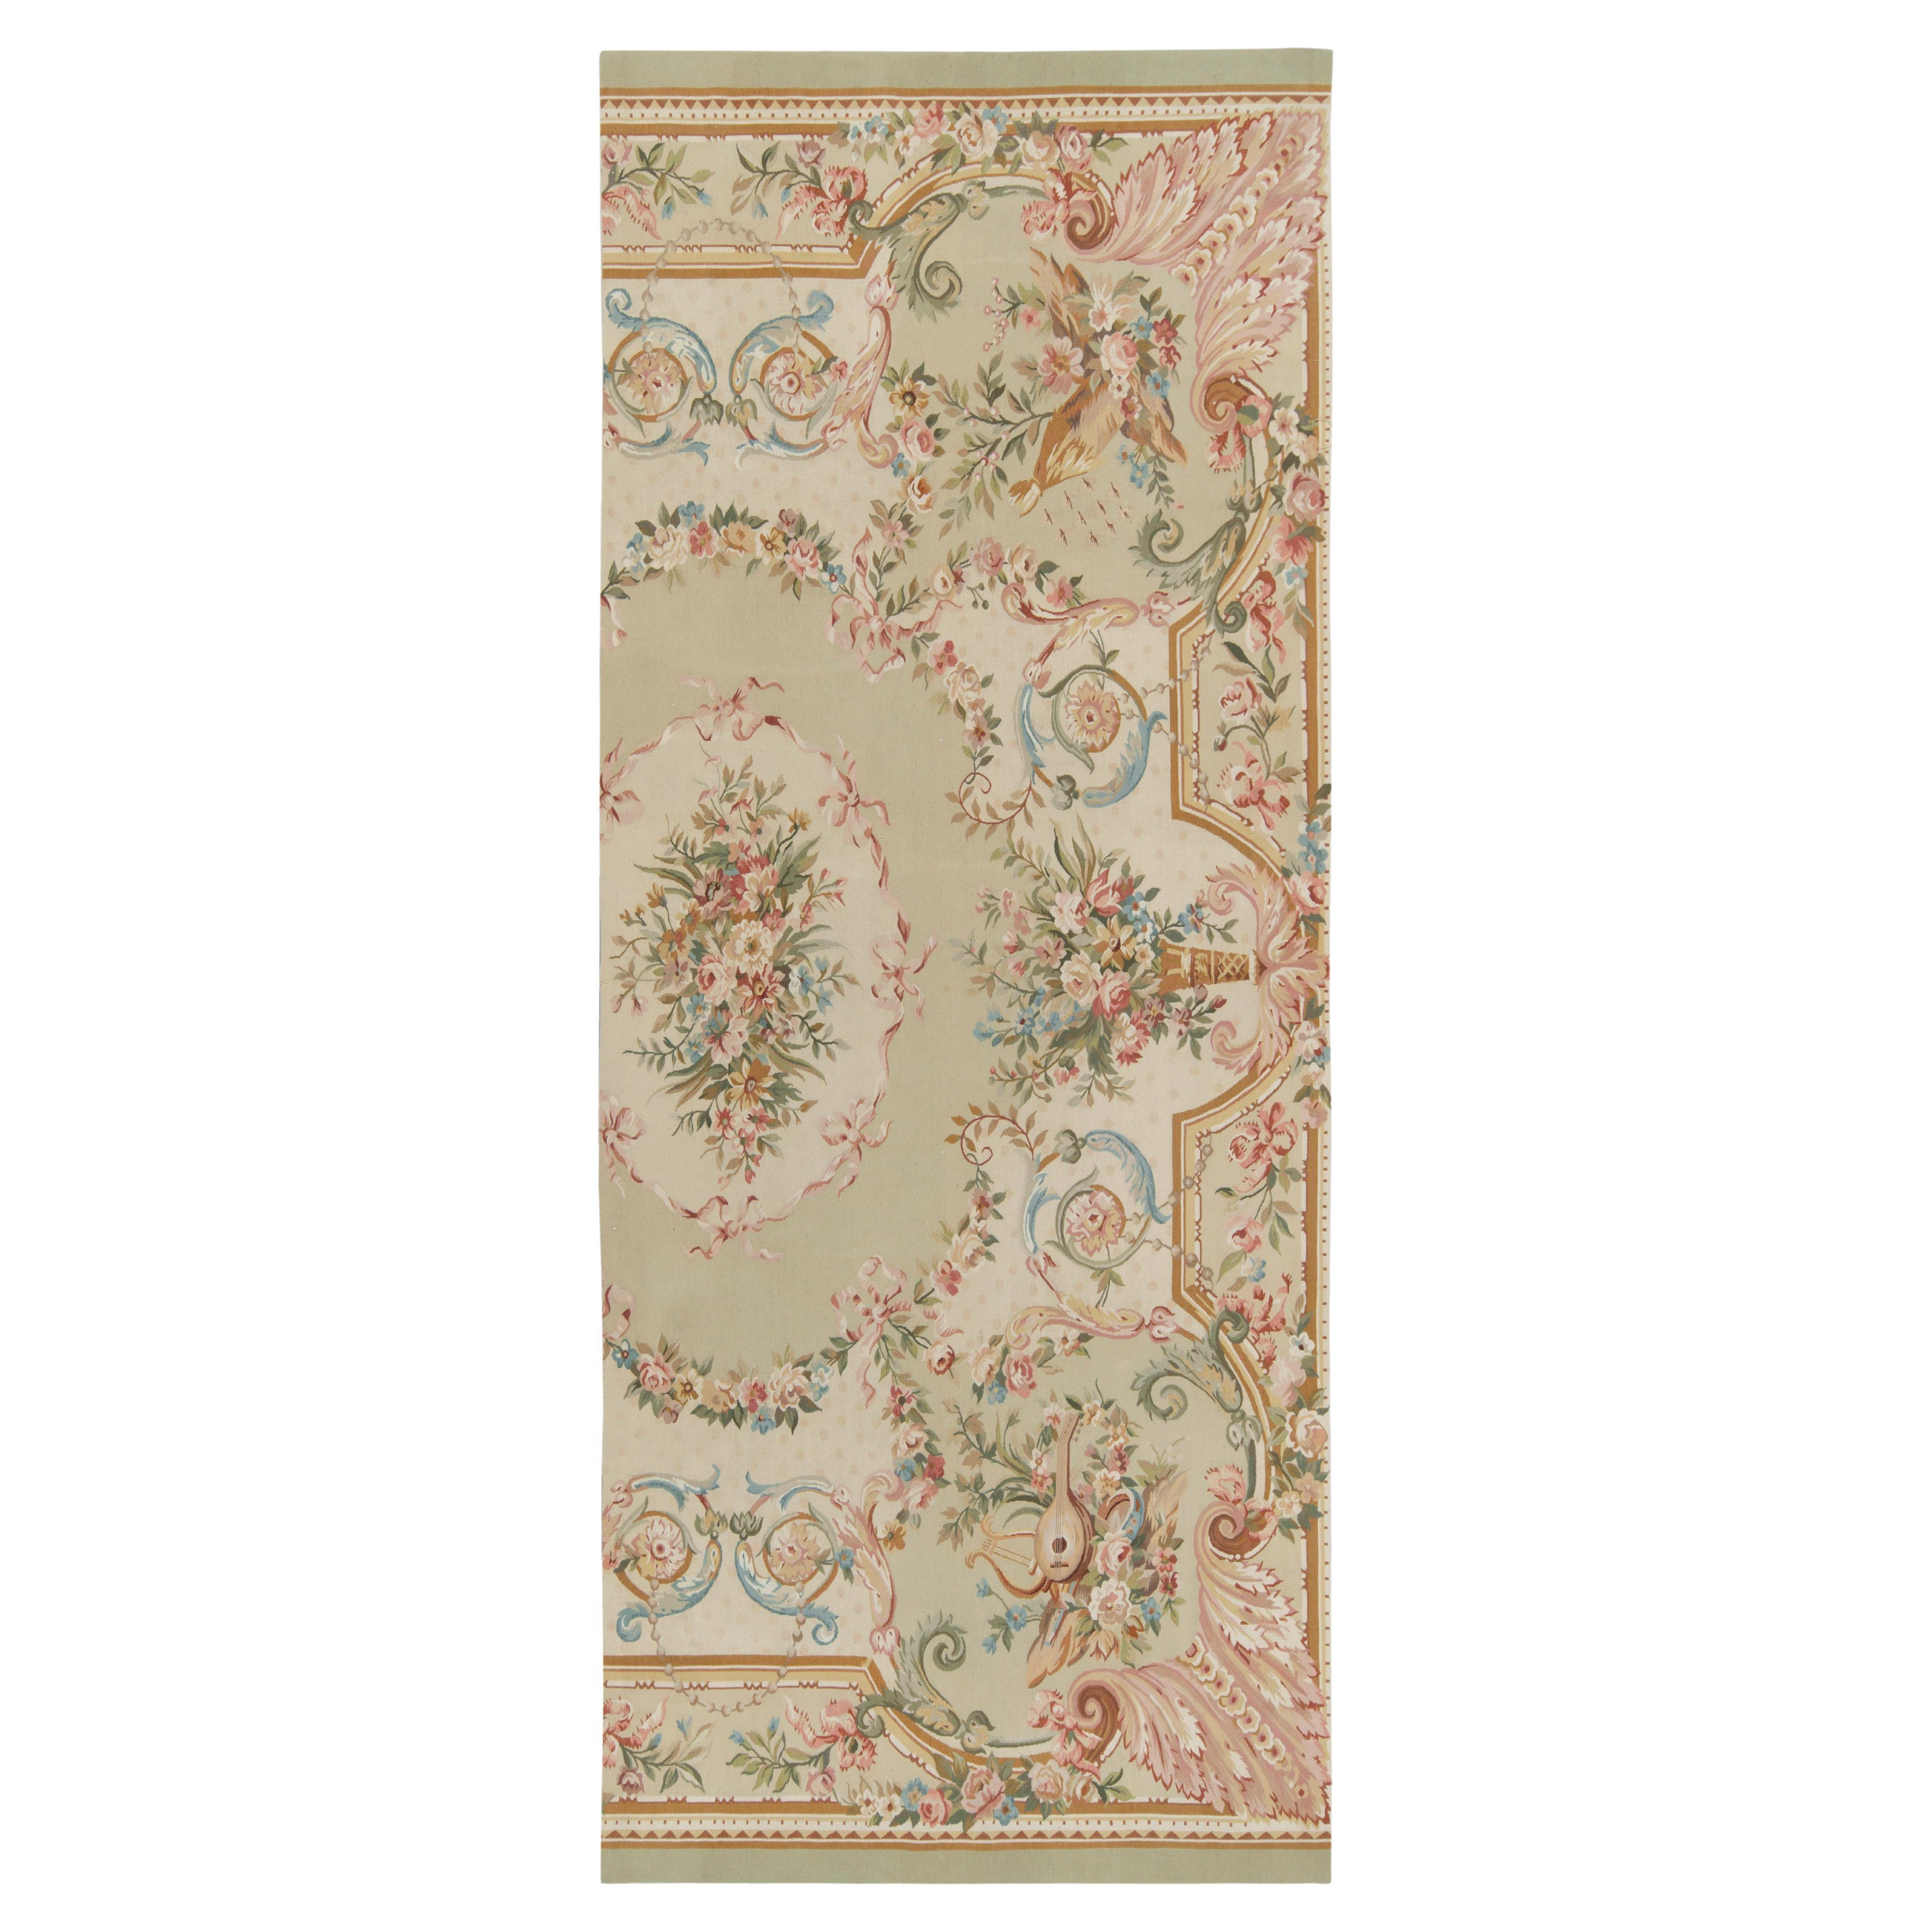 Handgewebter Teppich & Kelim-Teppich im Flachgewebe-Stil in Grün, Rosa und Beige mit Blumenmuster